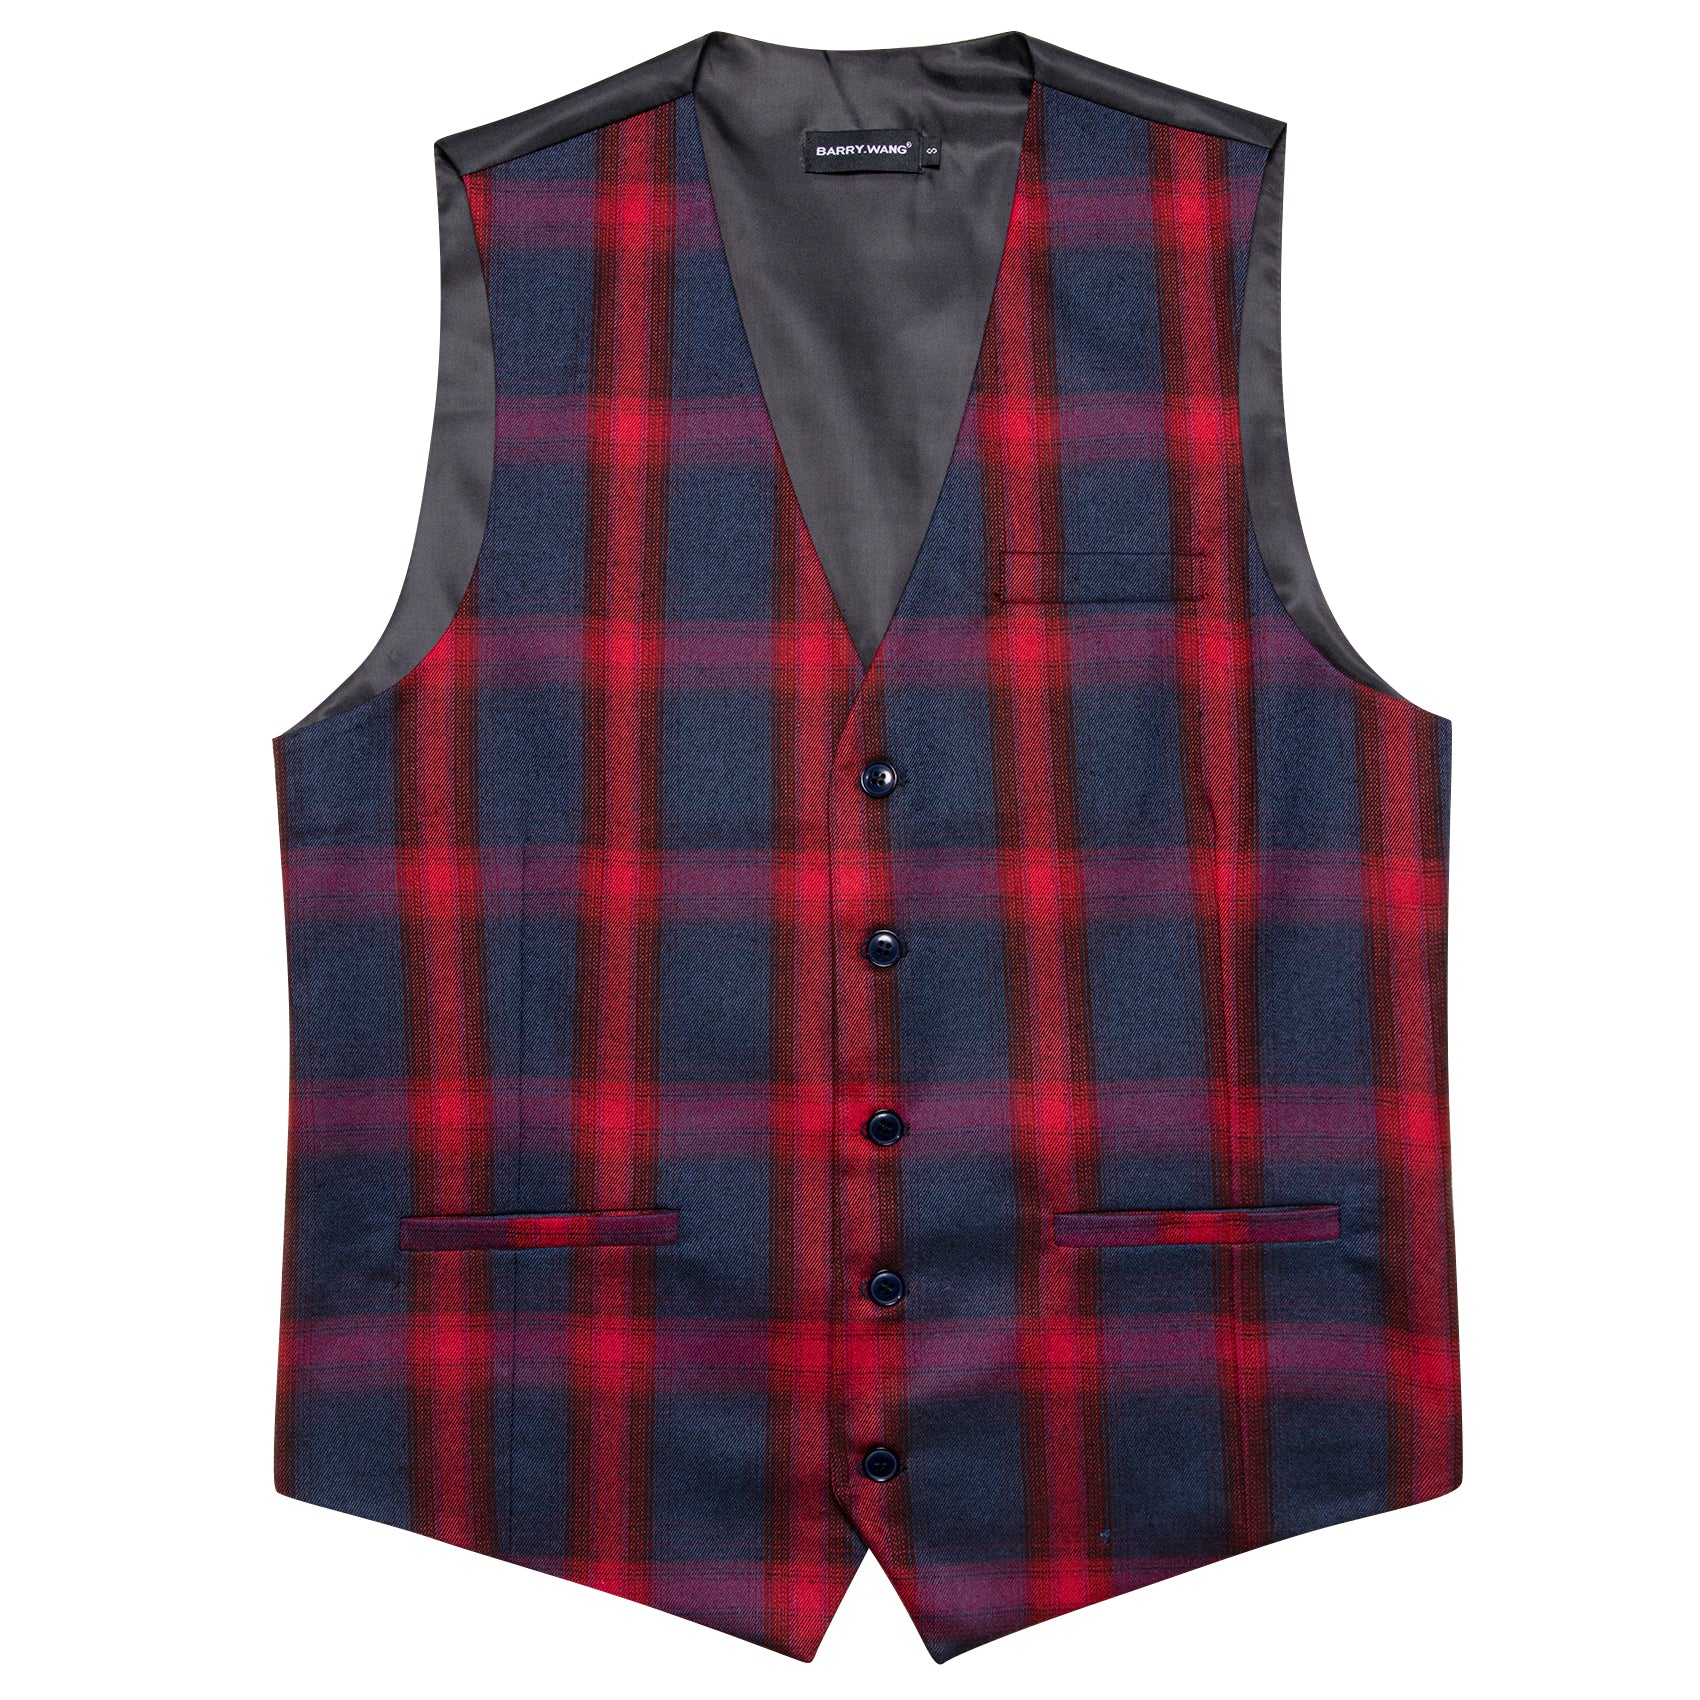 Barry.wang Men's Vest Classy Red Black Plaid Vest Waistcoat Set